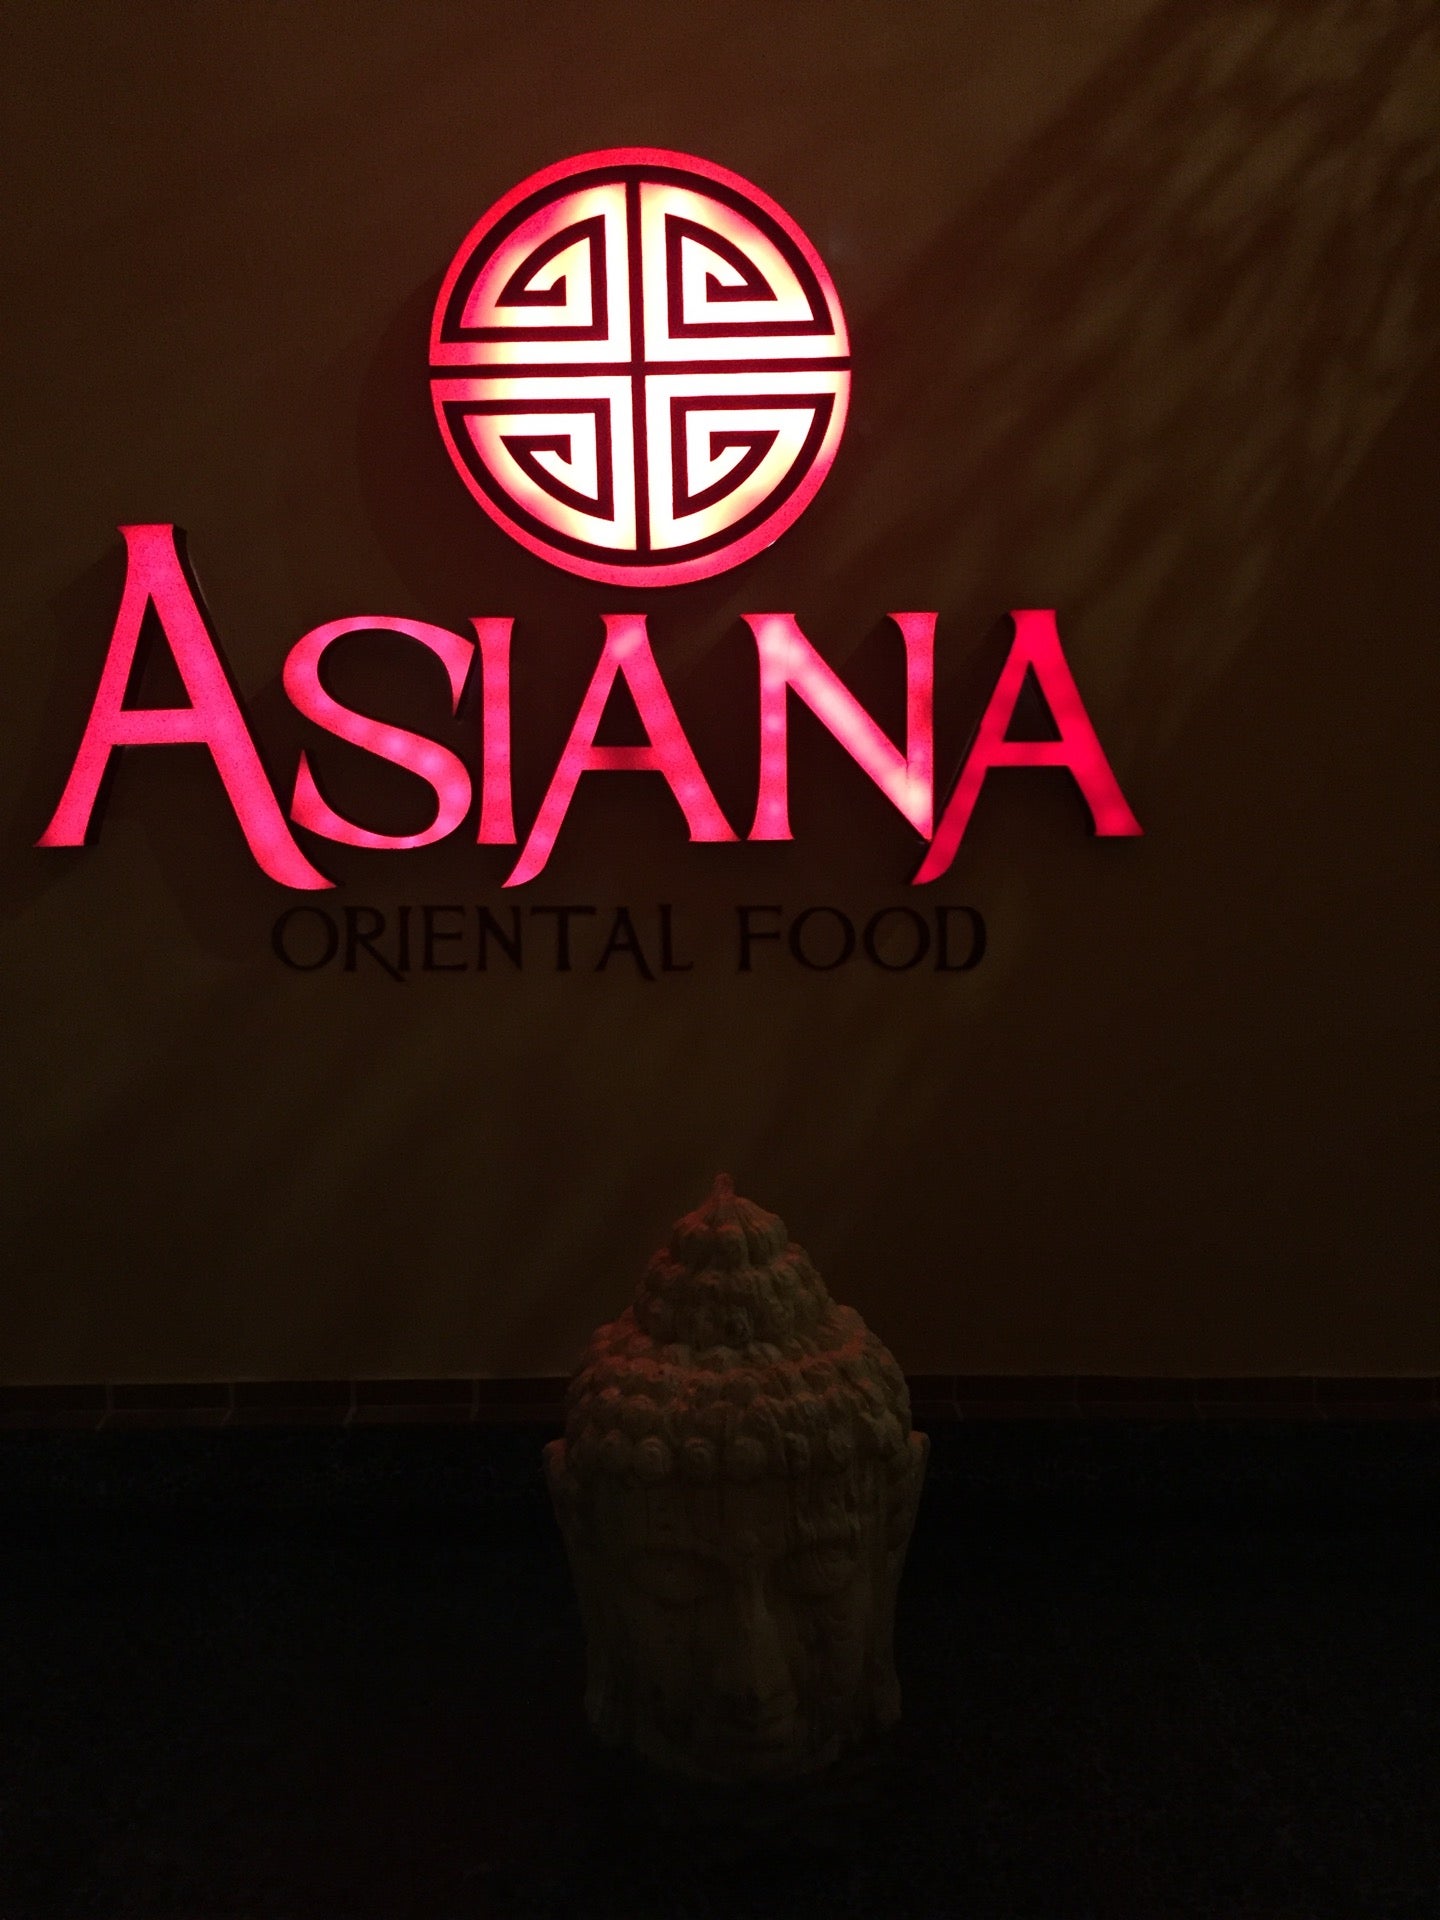 Asiana Oriental Food Sandos